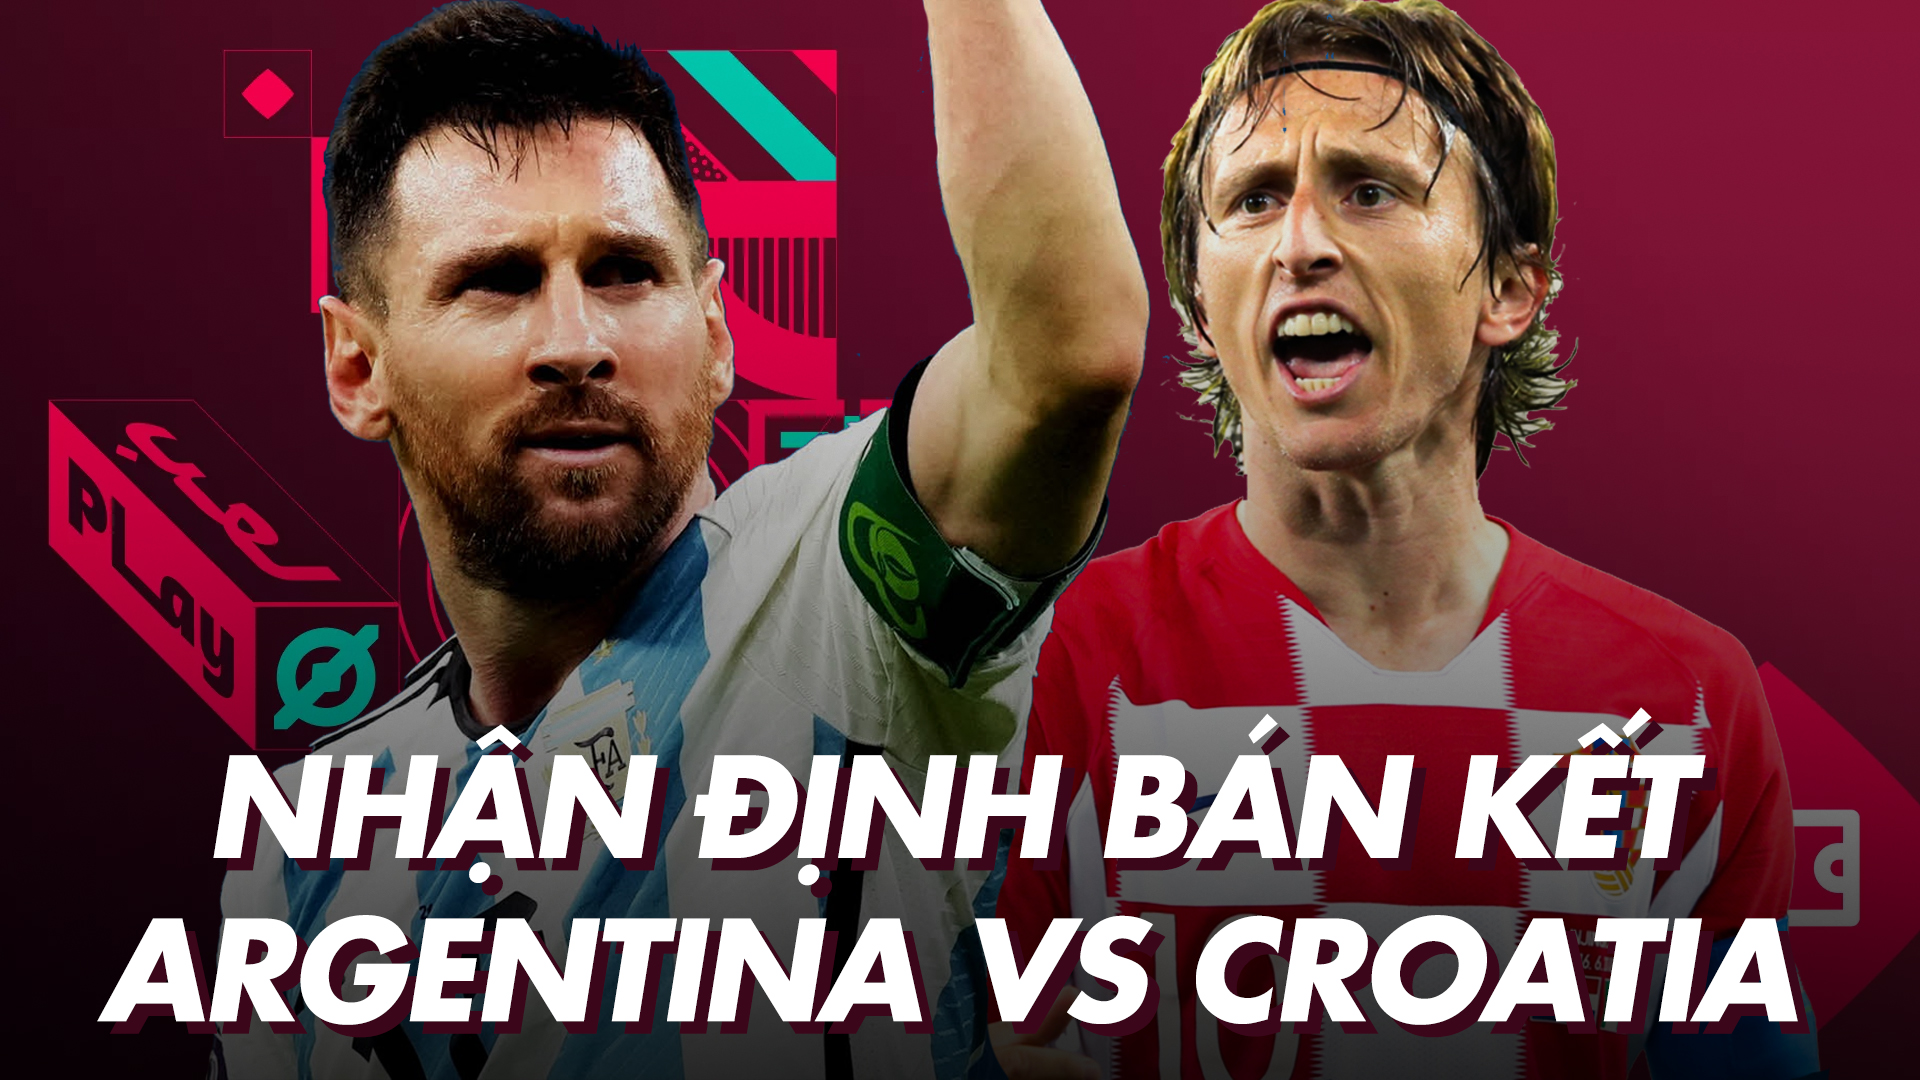 Nhận định dự đoán bán kết World Cup 2022: Argentina vs Croatia